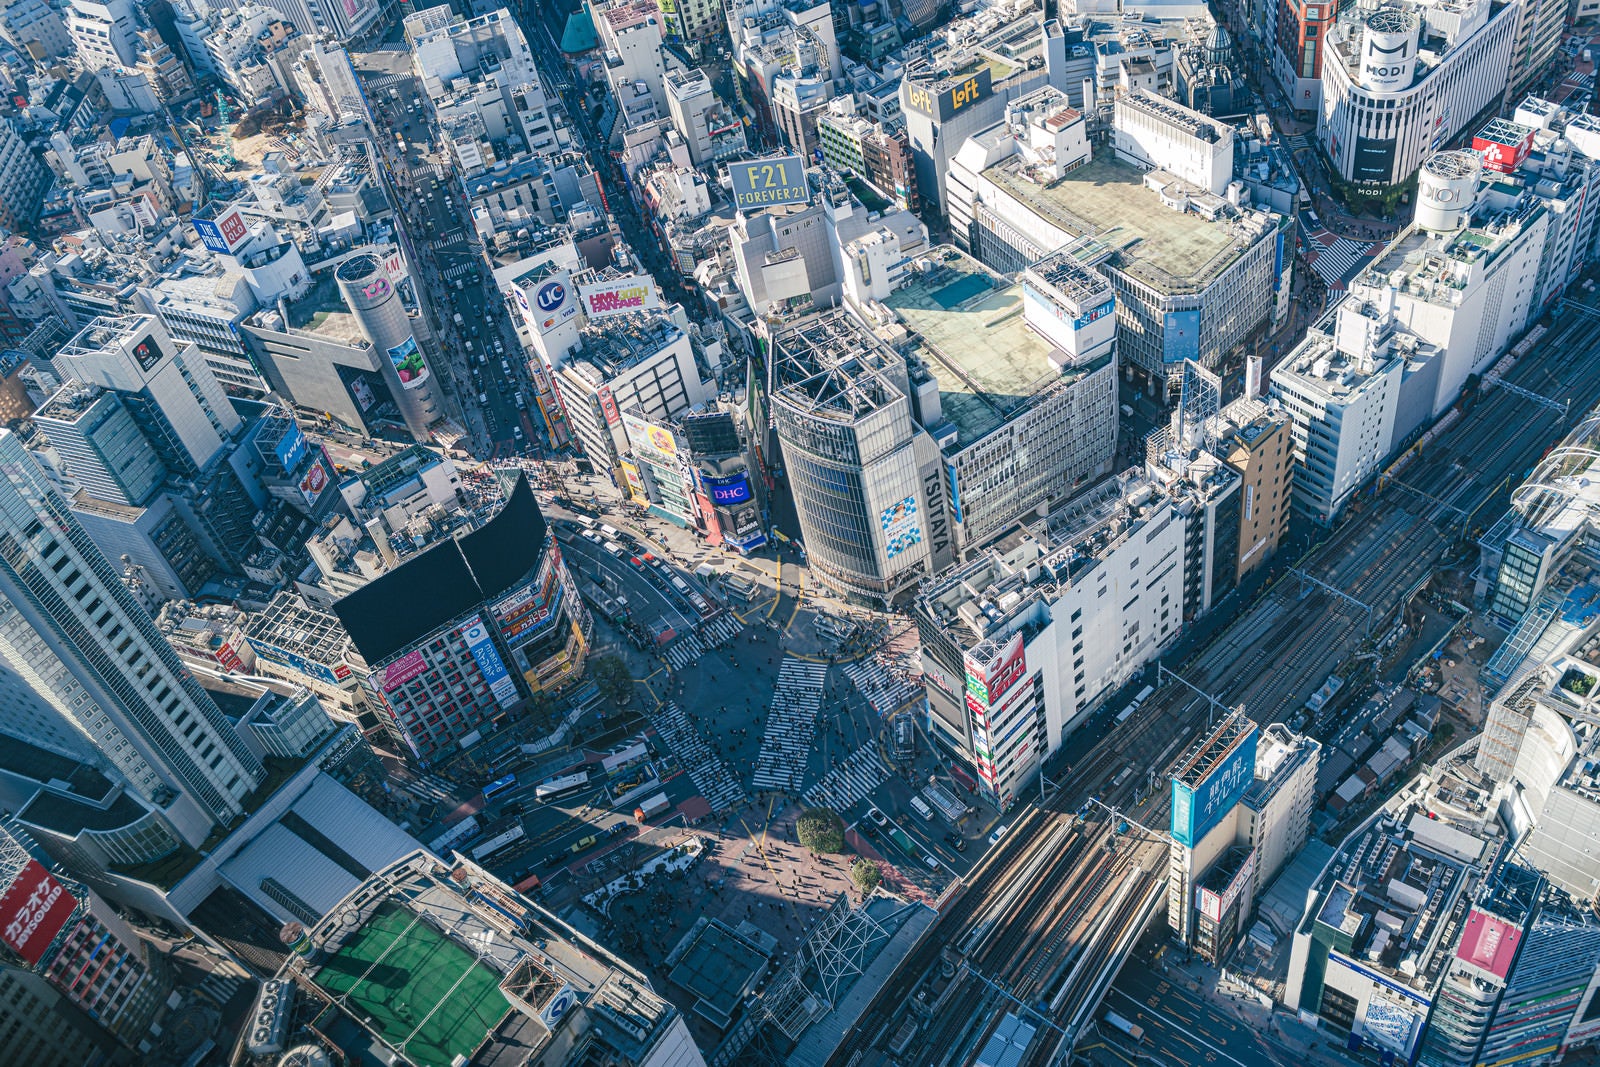 「渋谷スカイから見下ろすスクランブル交差点の様子」の写真